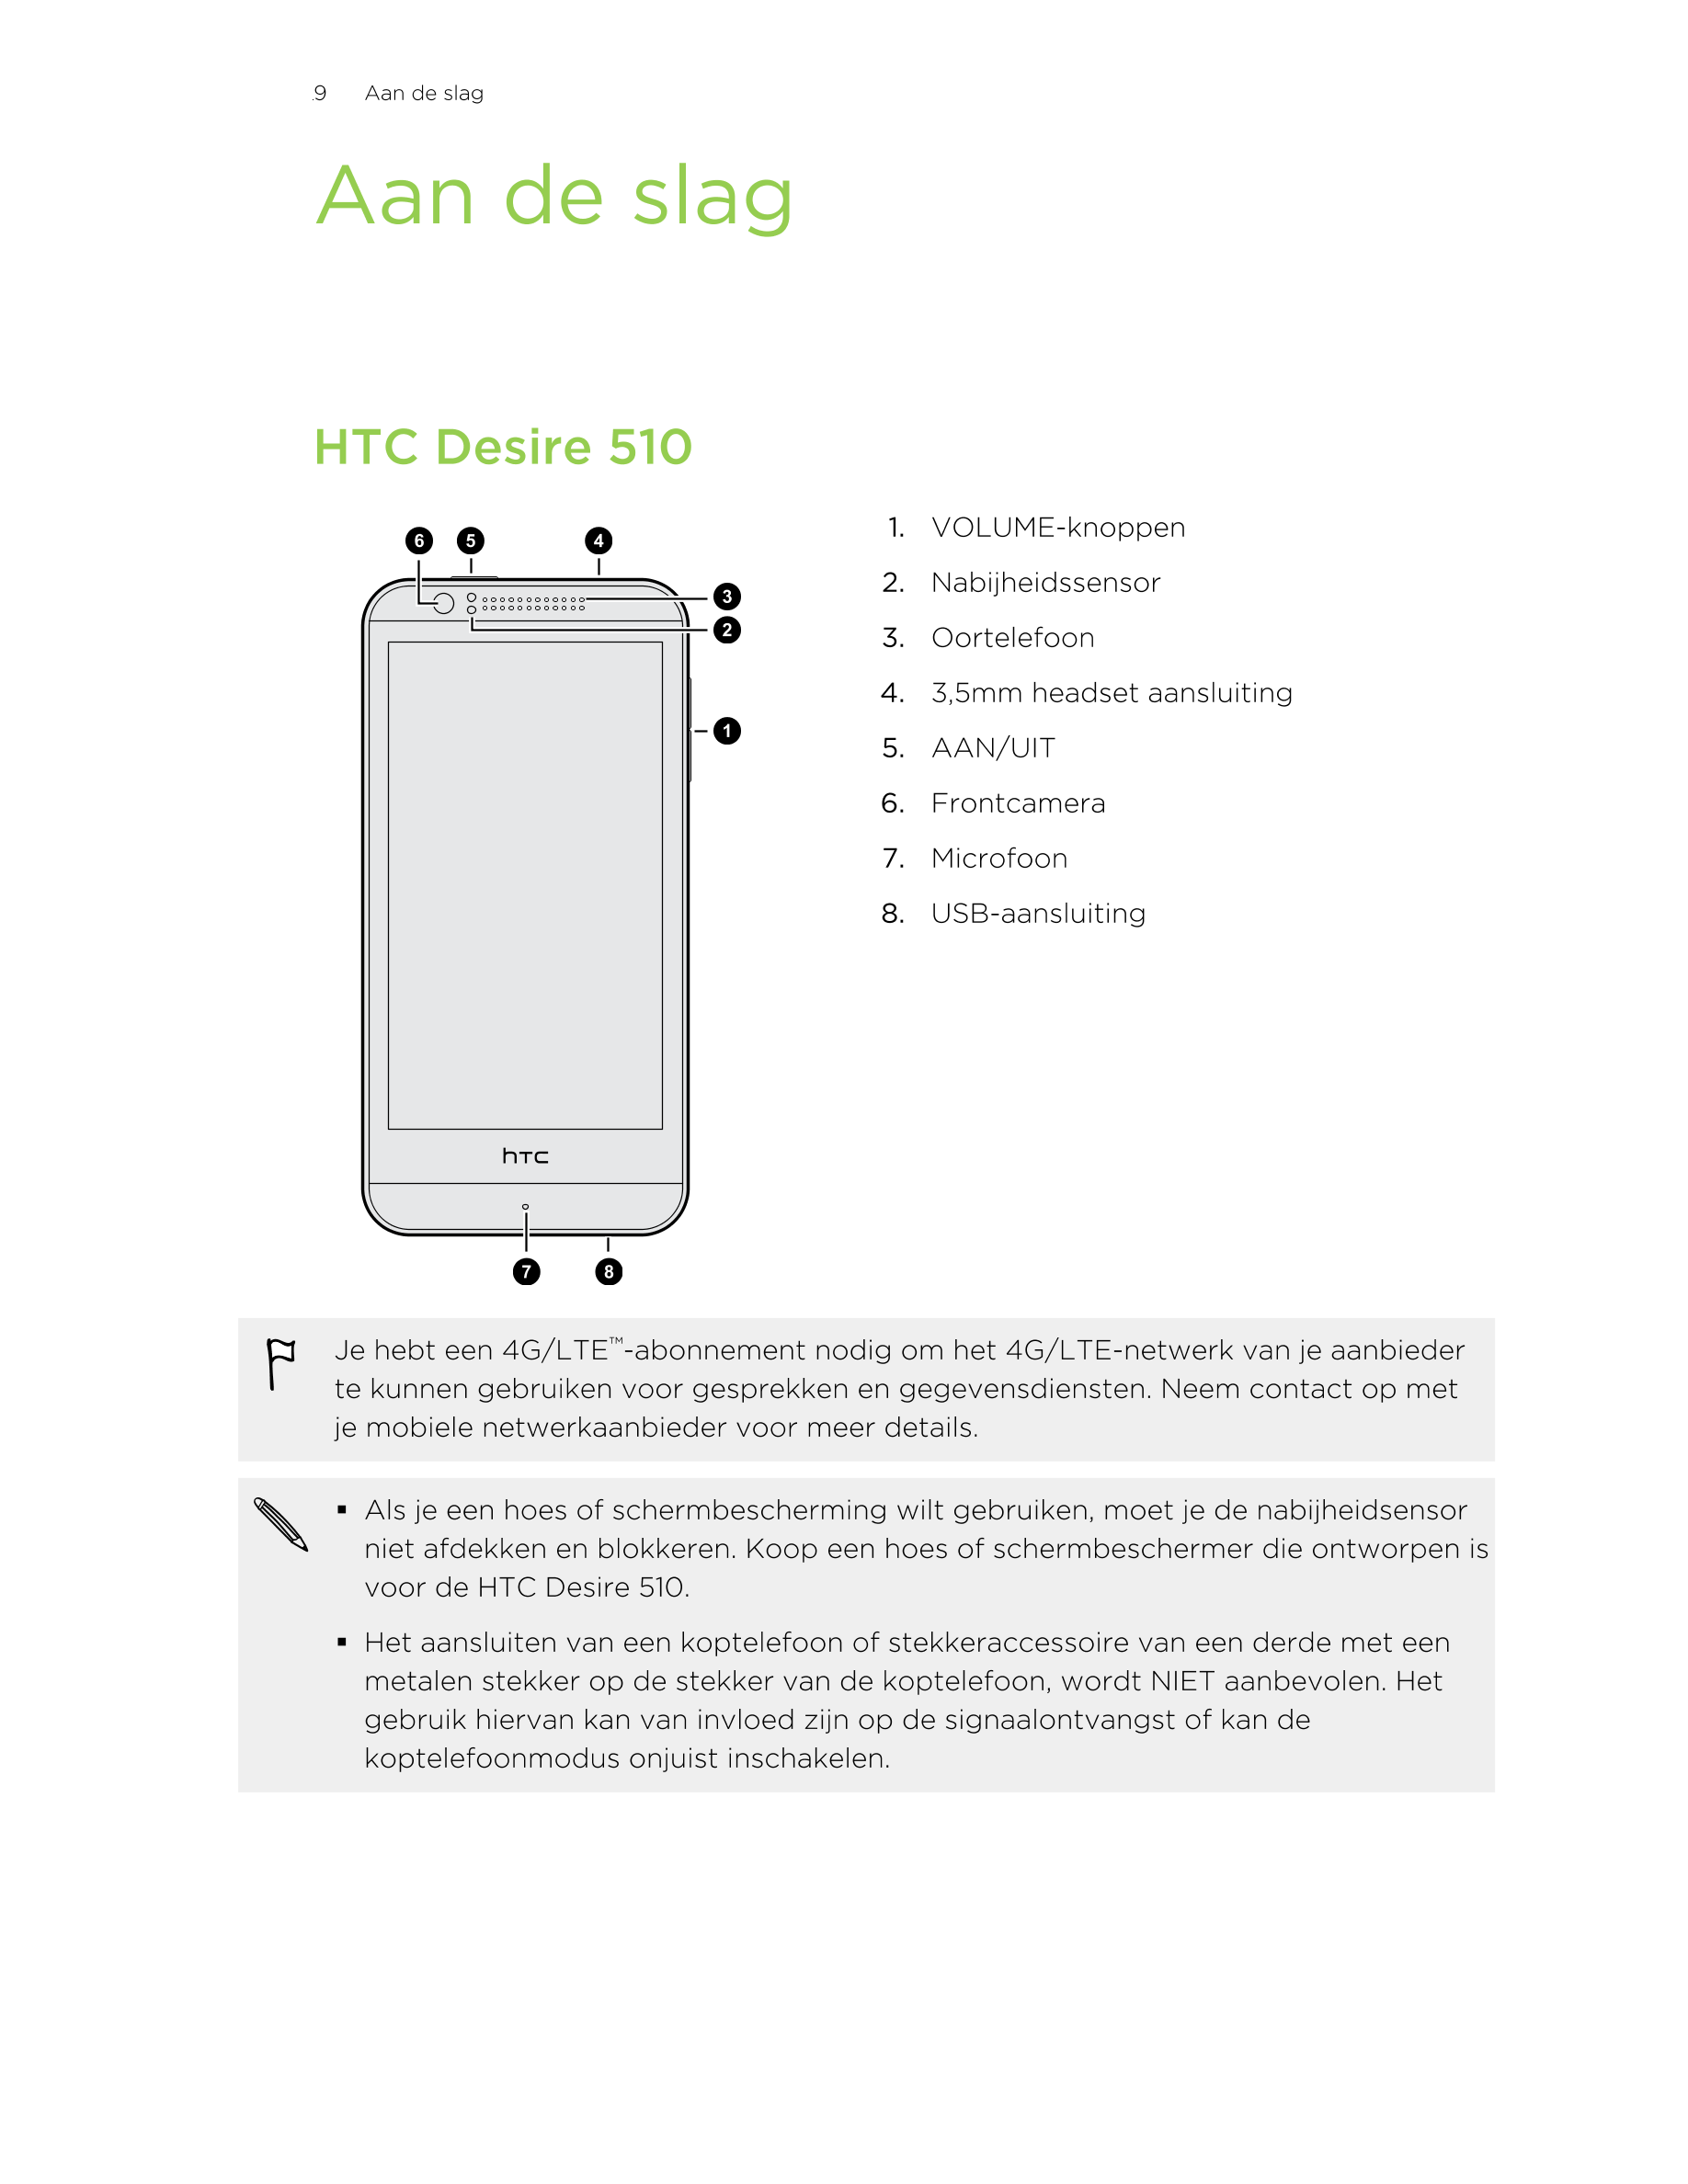 9      Aan de slag
Aan de slag
HTC Desire 510
1. VOLUME-knoppen
2. Nabijheidssensor
3. Oortelefoon
4. 3,5mm headset aansluiting
